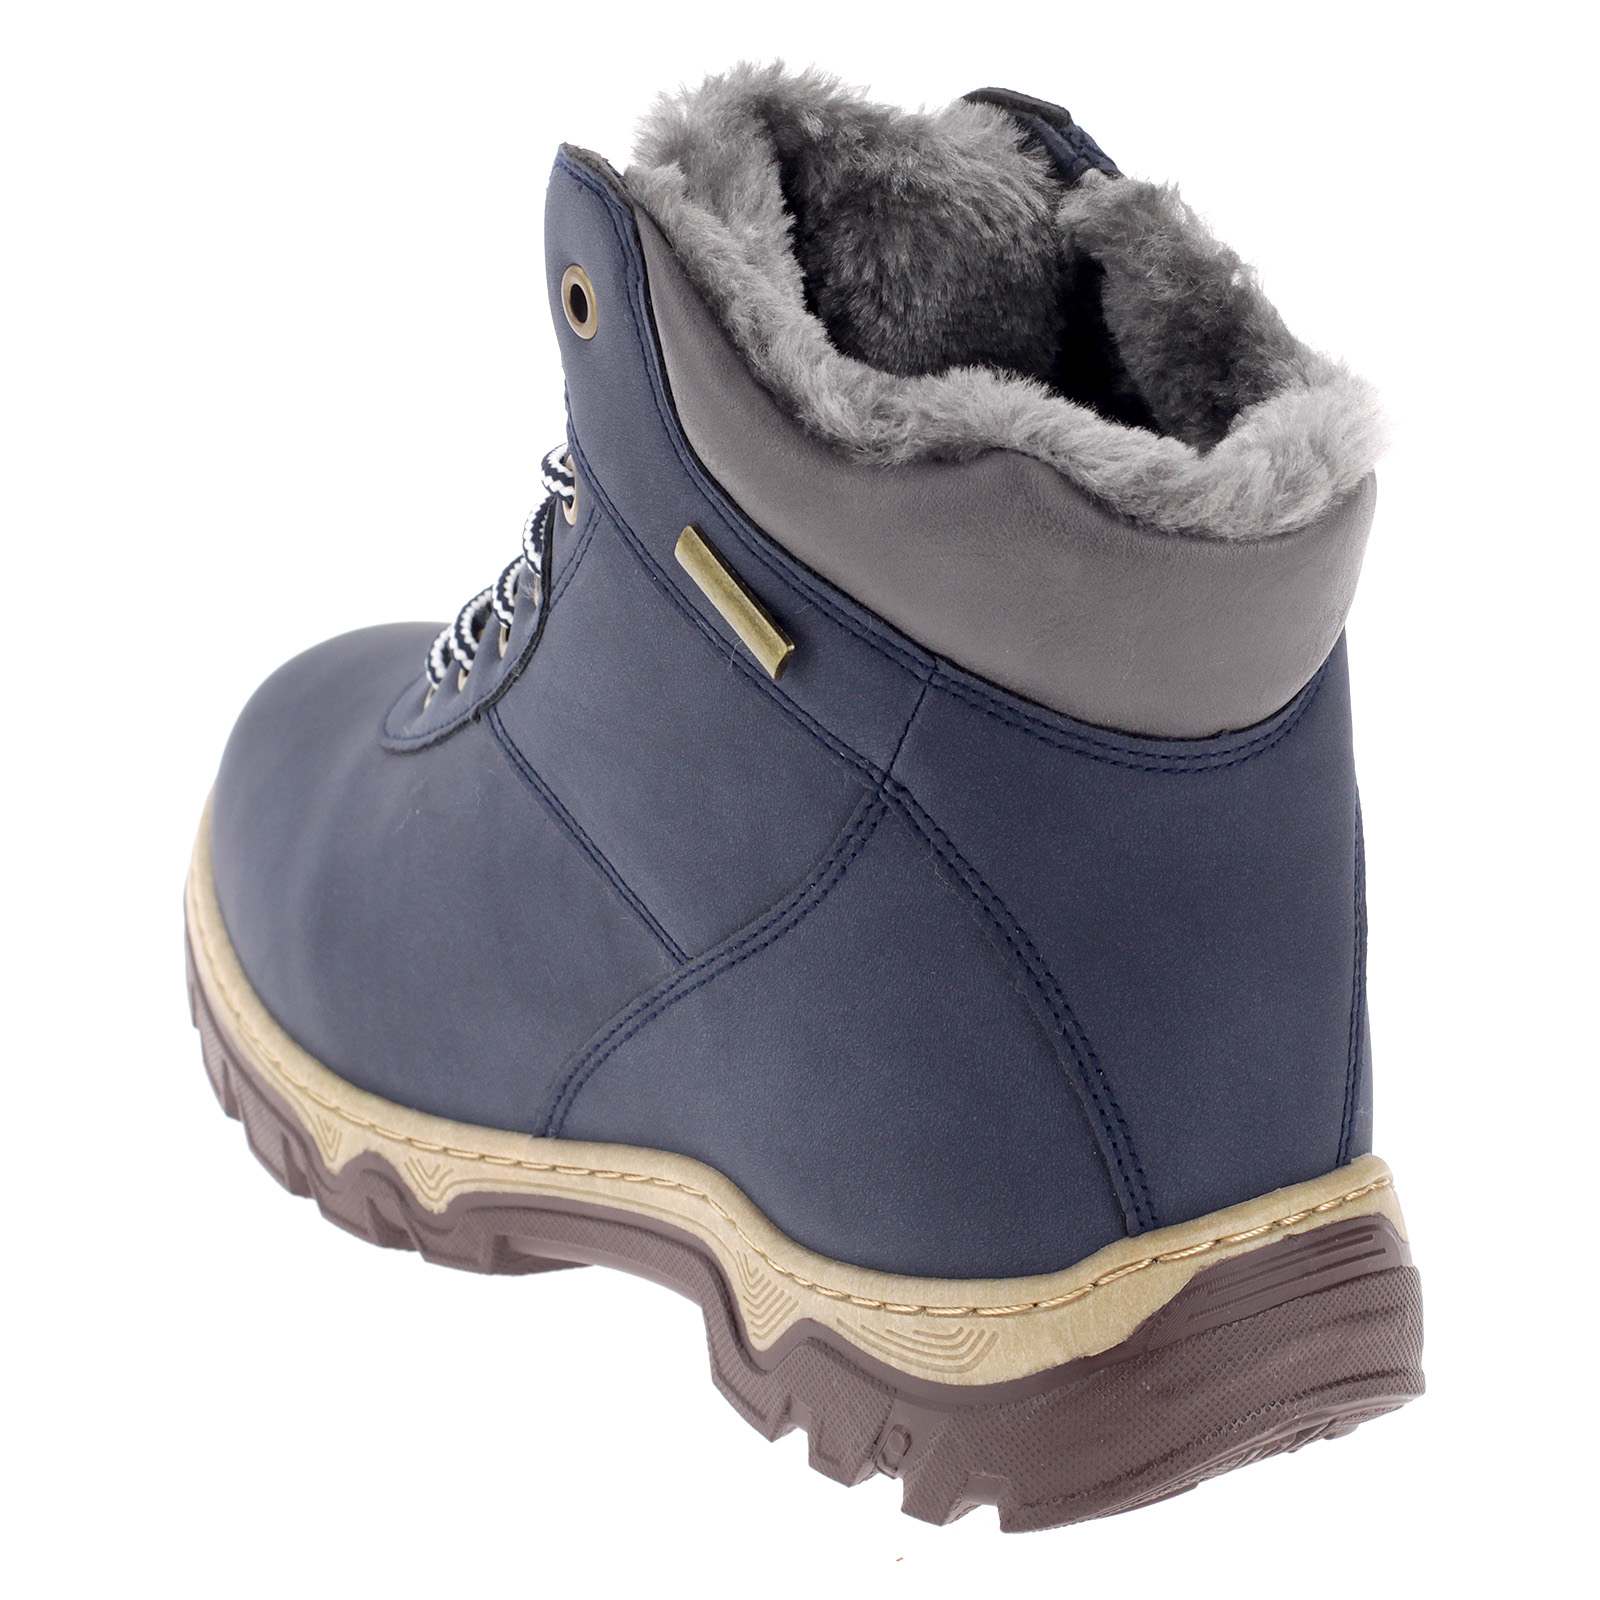 Damen Stiefel Winterschuhe Outdoor Boots Warmfutter Gefütterte Schuhe 3430